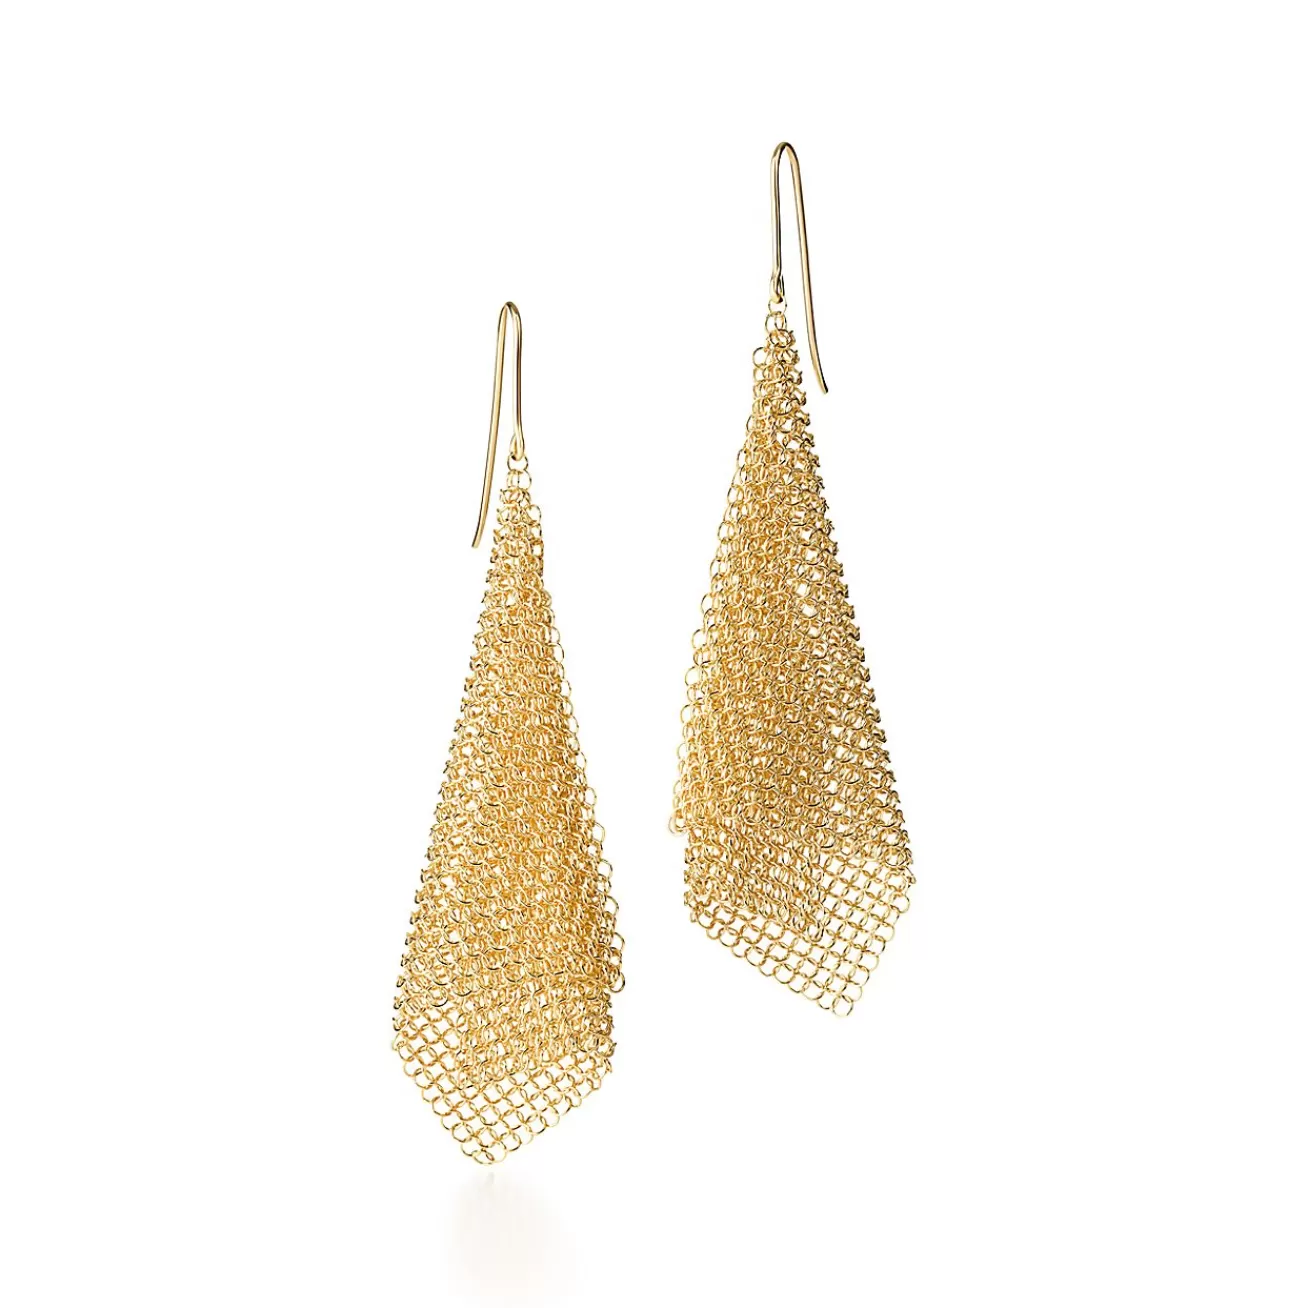 Tiffany & Co. Elsa Peretti® Mesh scarf earrings in 18k gold, small. | ^ Earrings | Gold Jewelry